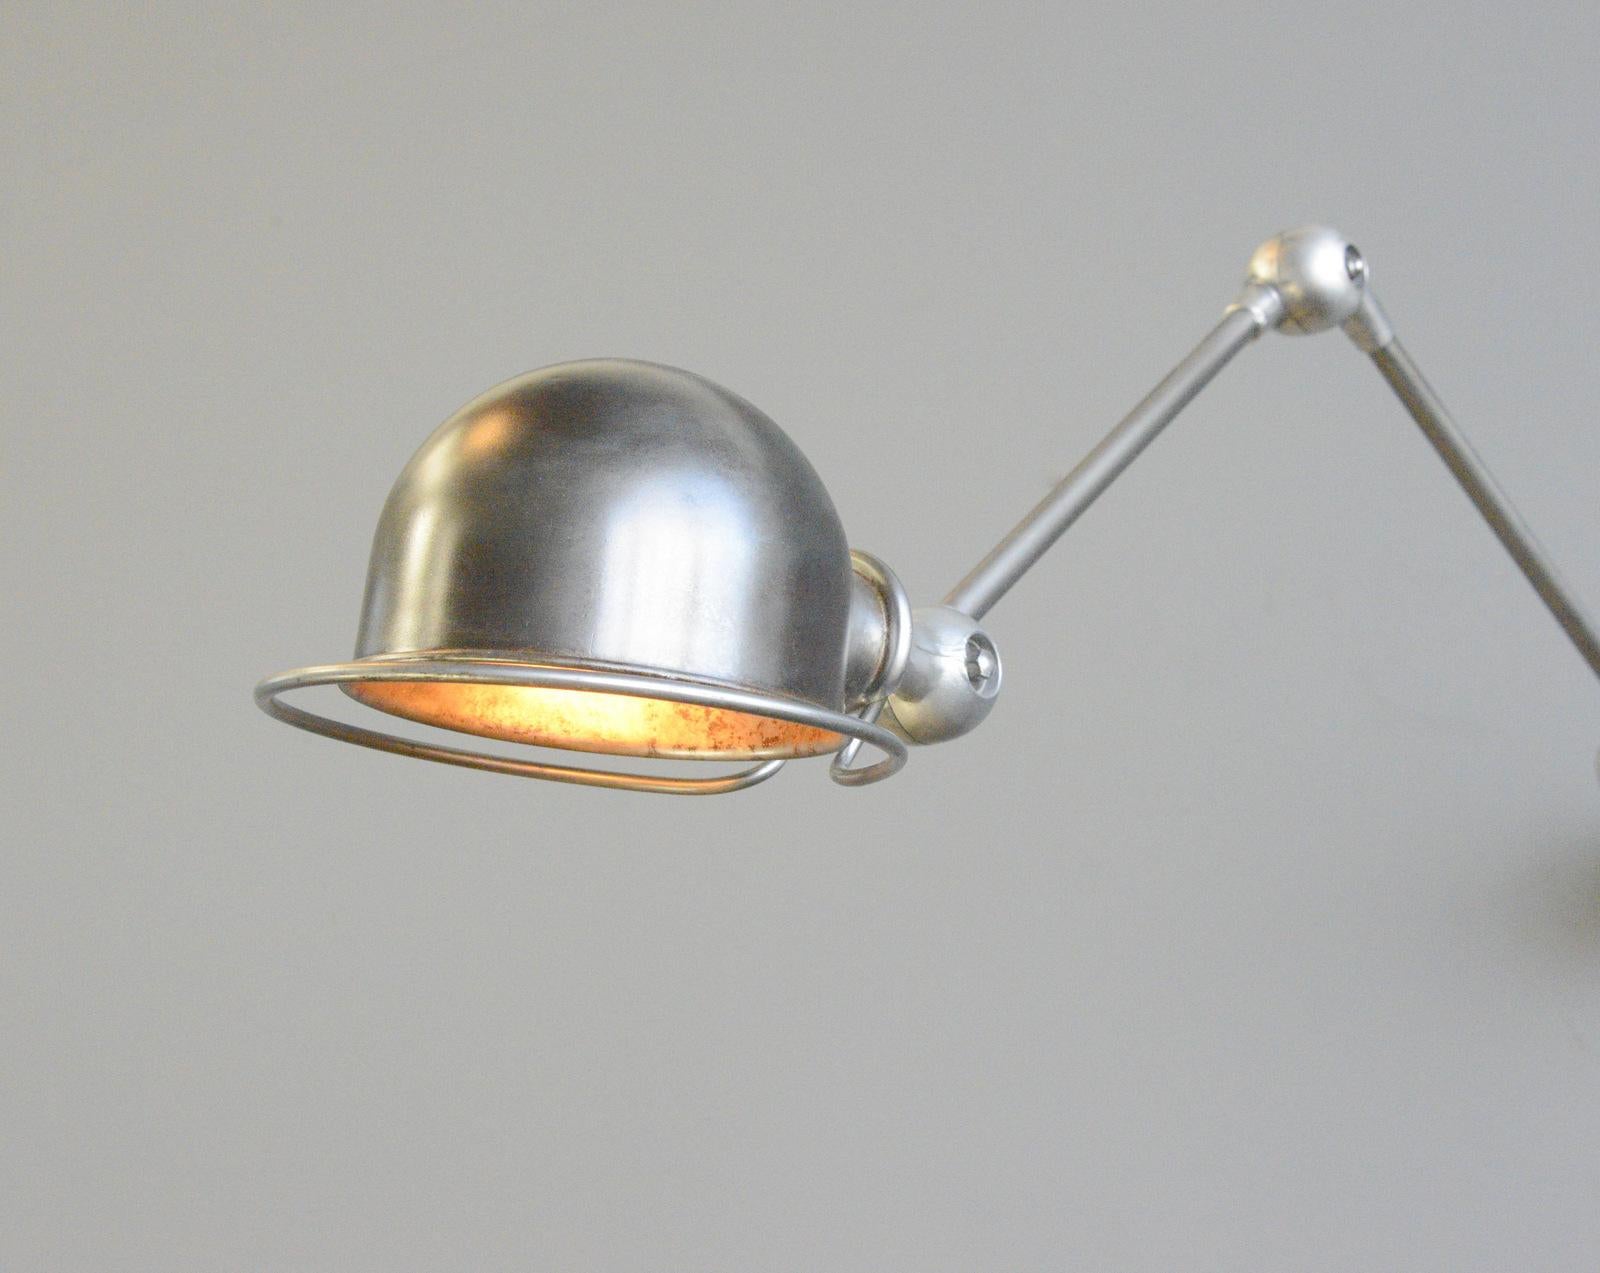 Steel Wall Mounted Industrial Lamp by Jielde, circa 1950s